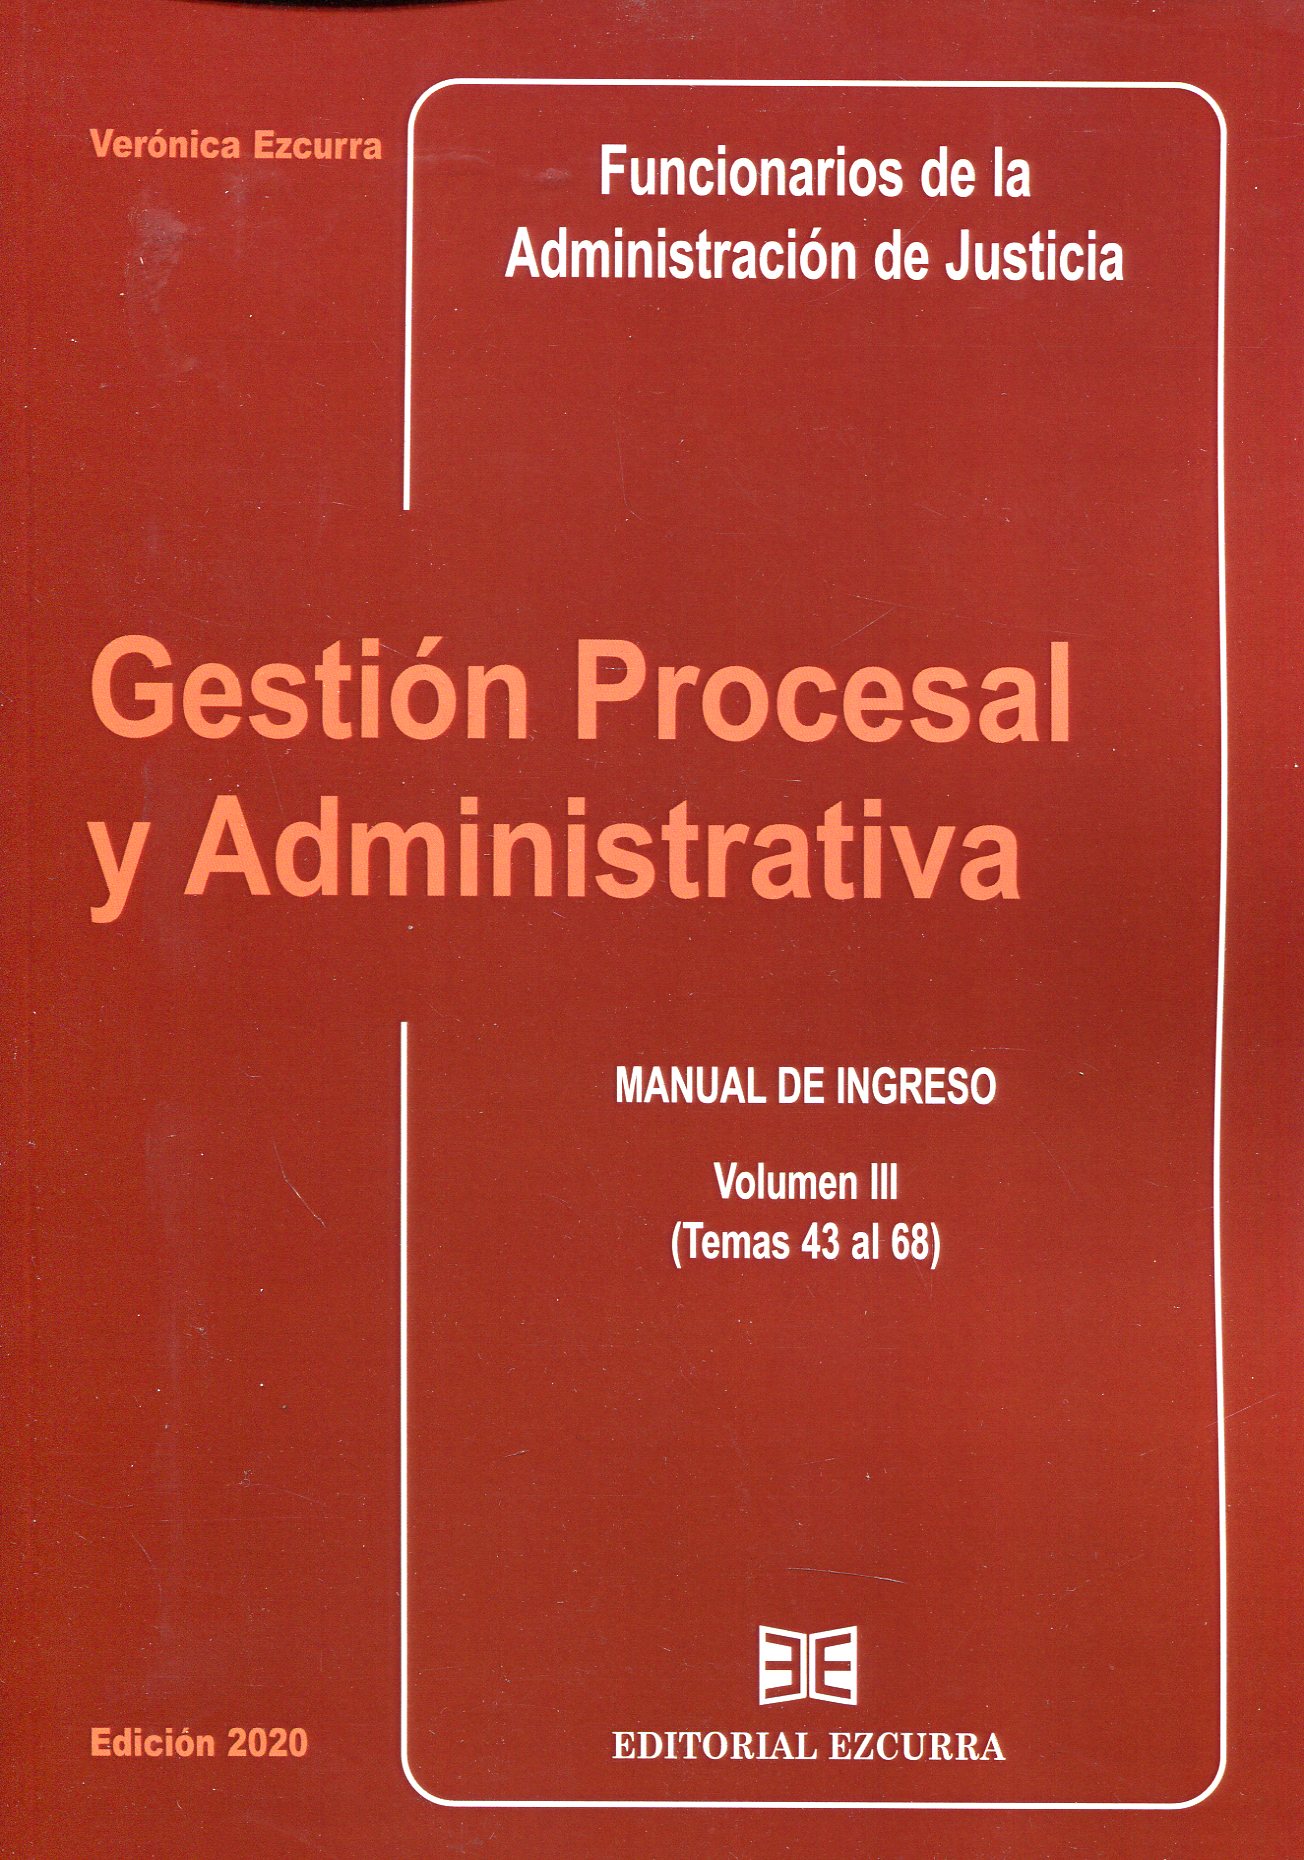 Gestión procesal y administrativa para Funcionarios de la Administración de Justicia. 9788416190614